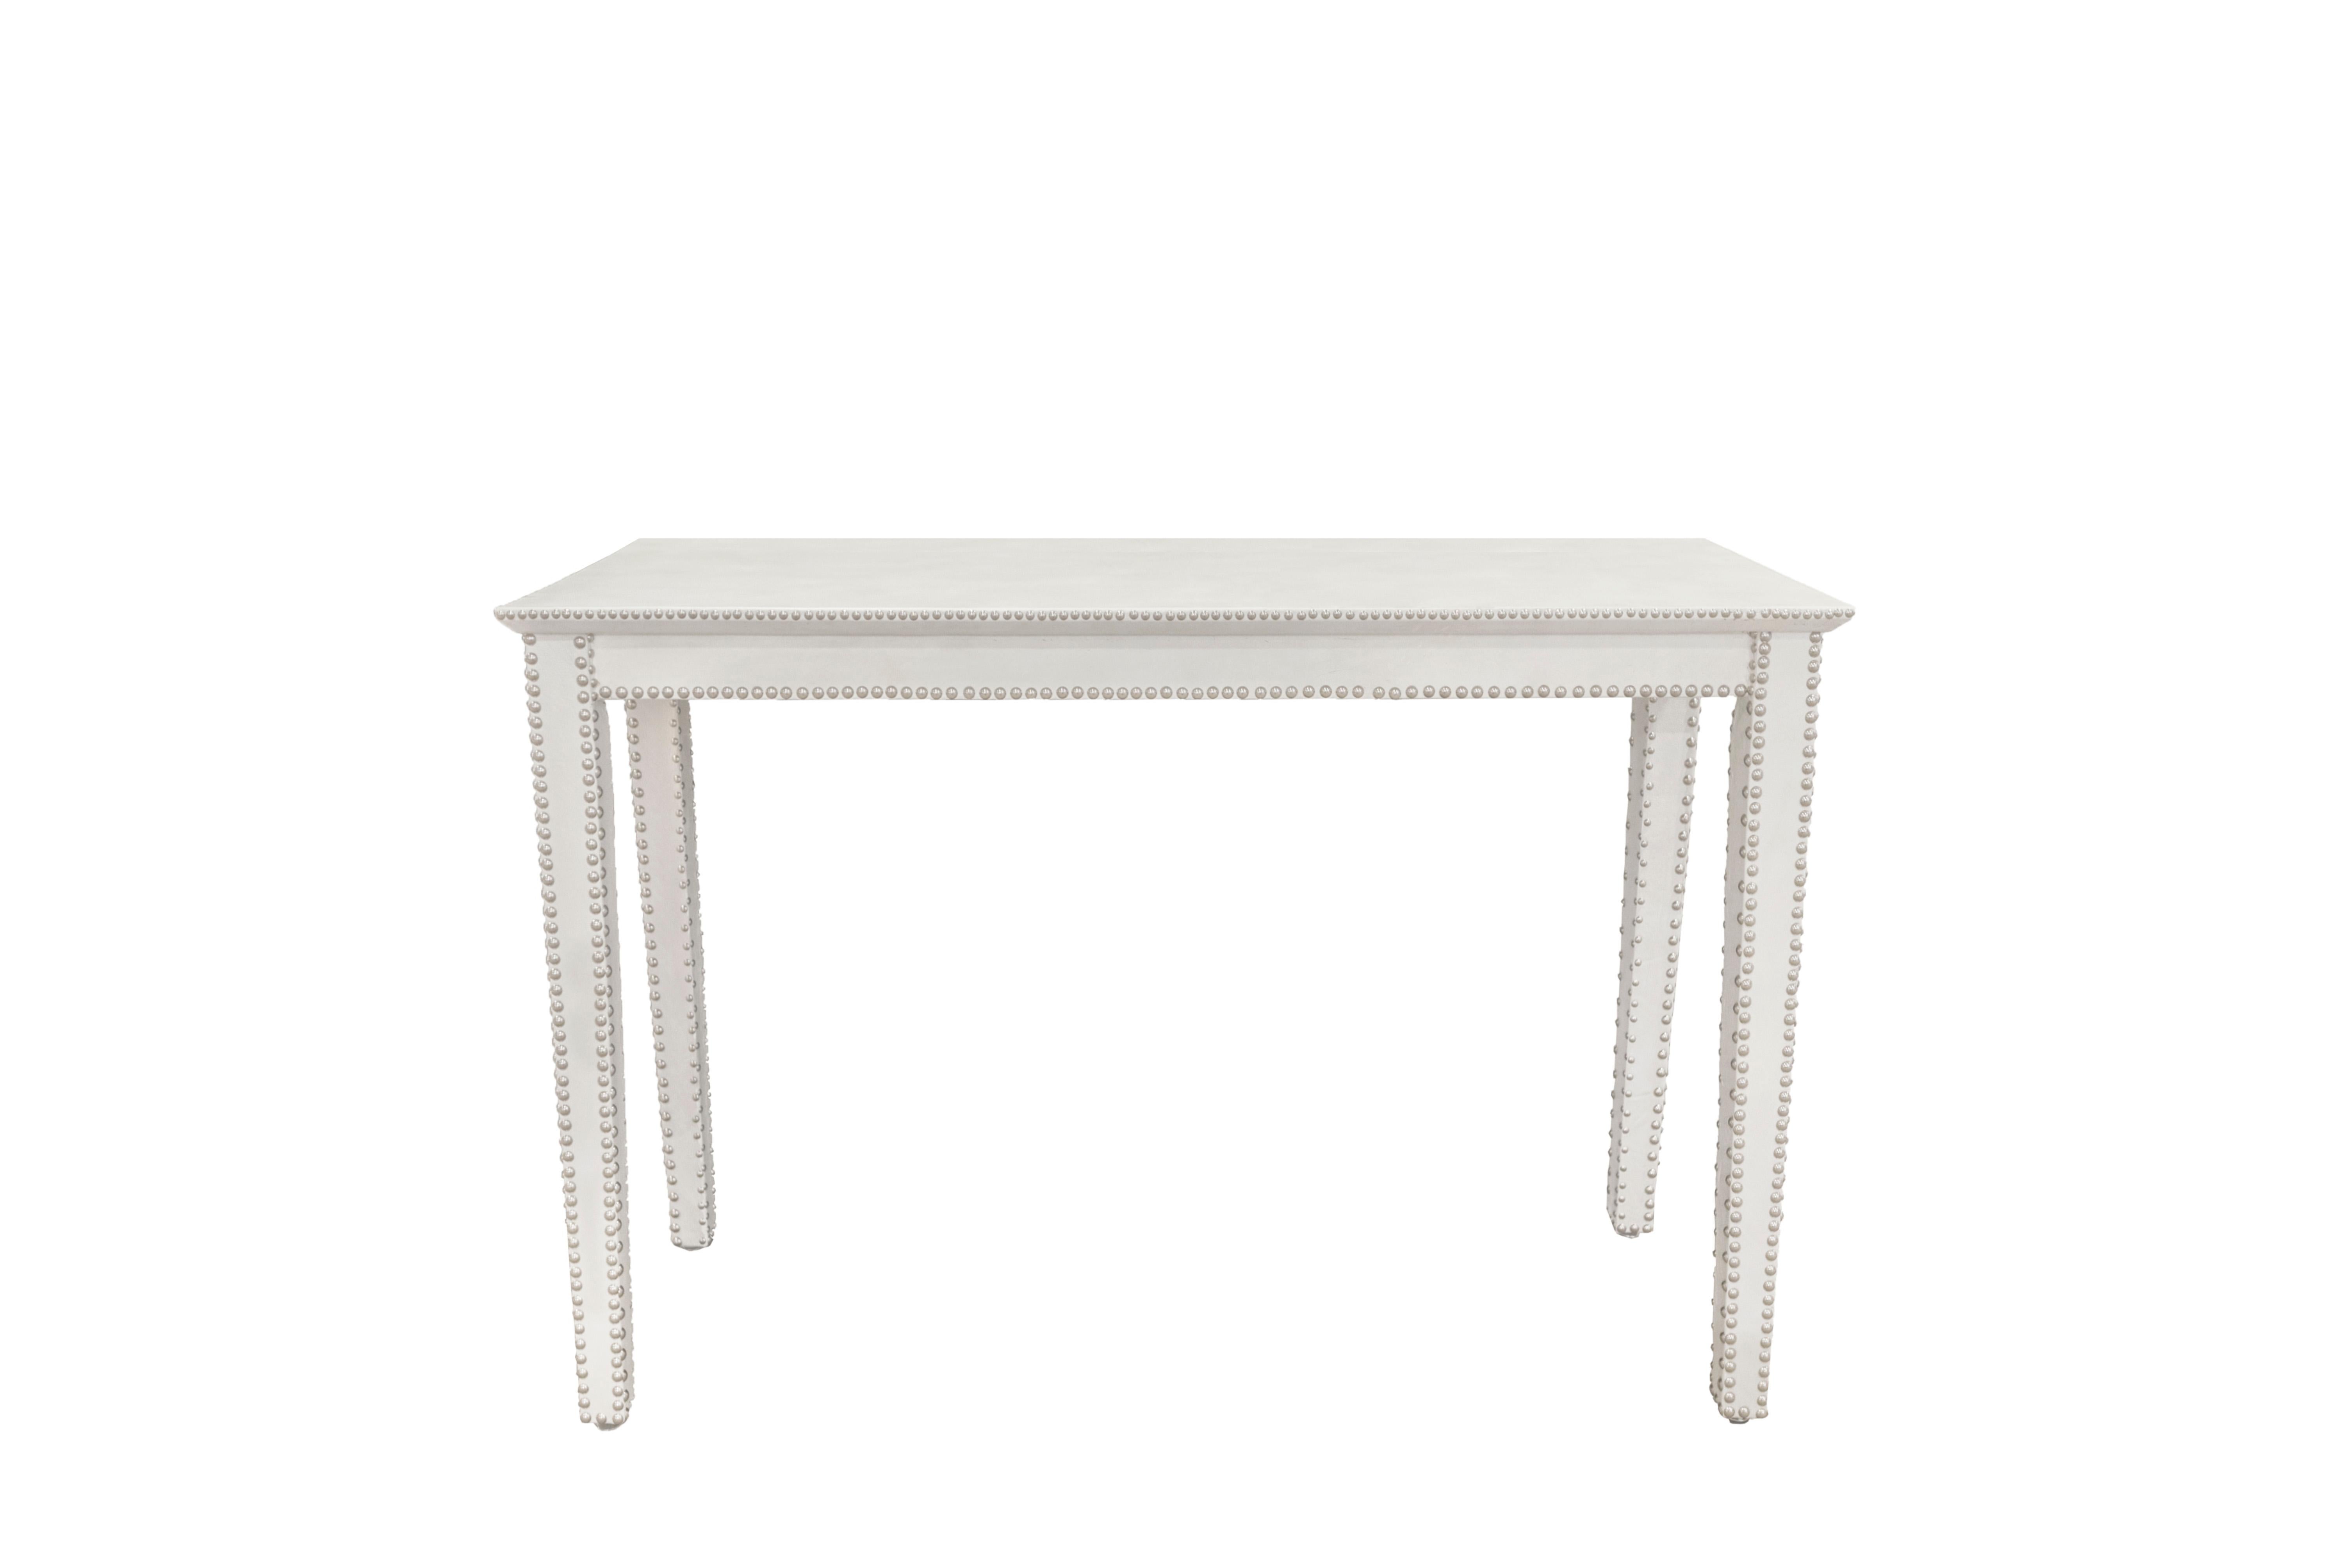 Table console aux lignes épurées en cuir blanc texturé avec clous chromés Design/One, américaine vers 2010 (signée avec une étiquette en métal sur le dessous).  Cette table est fabriquée de manière méticuleuse.